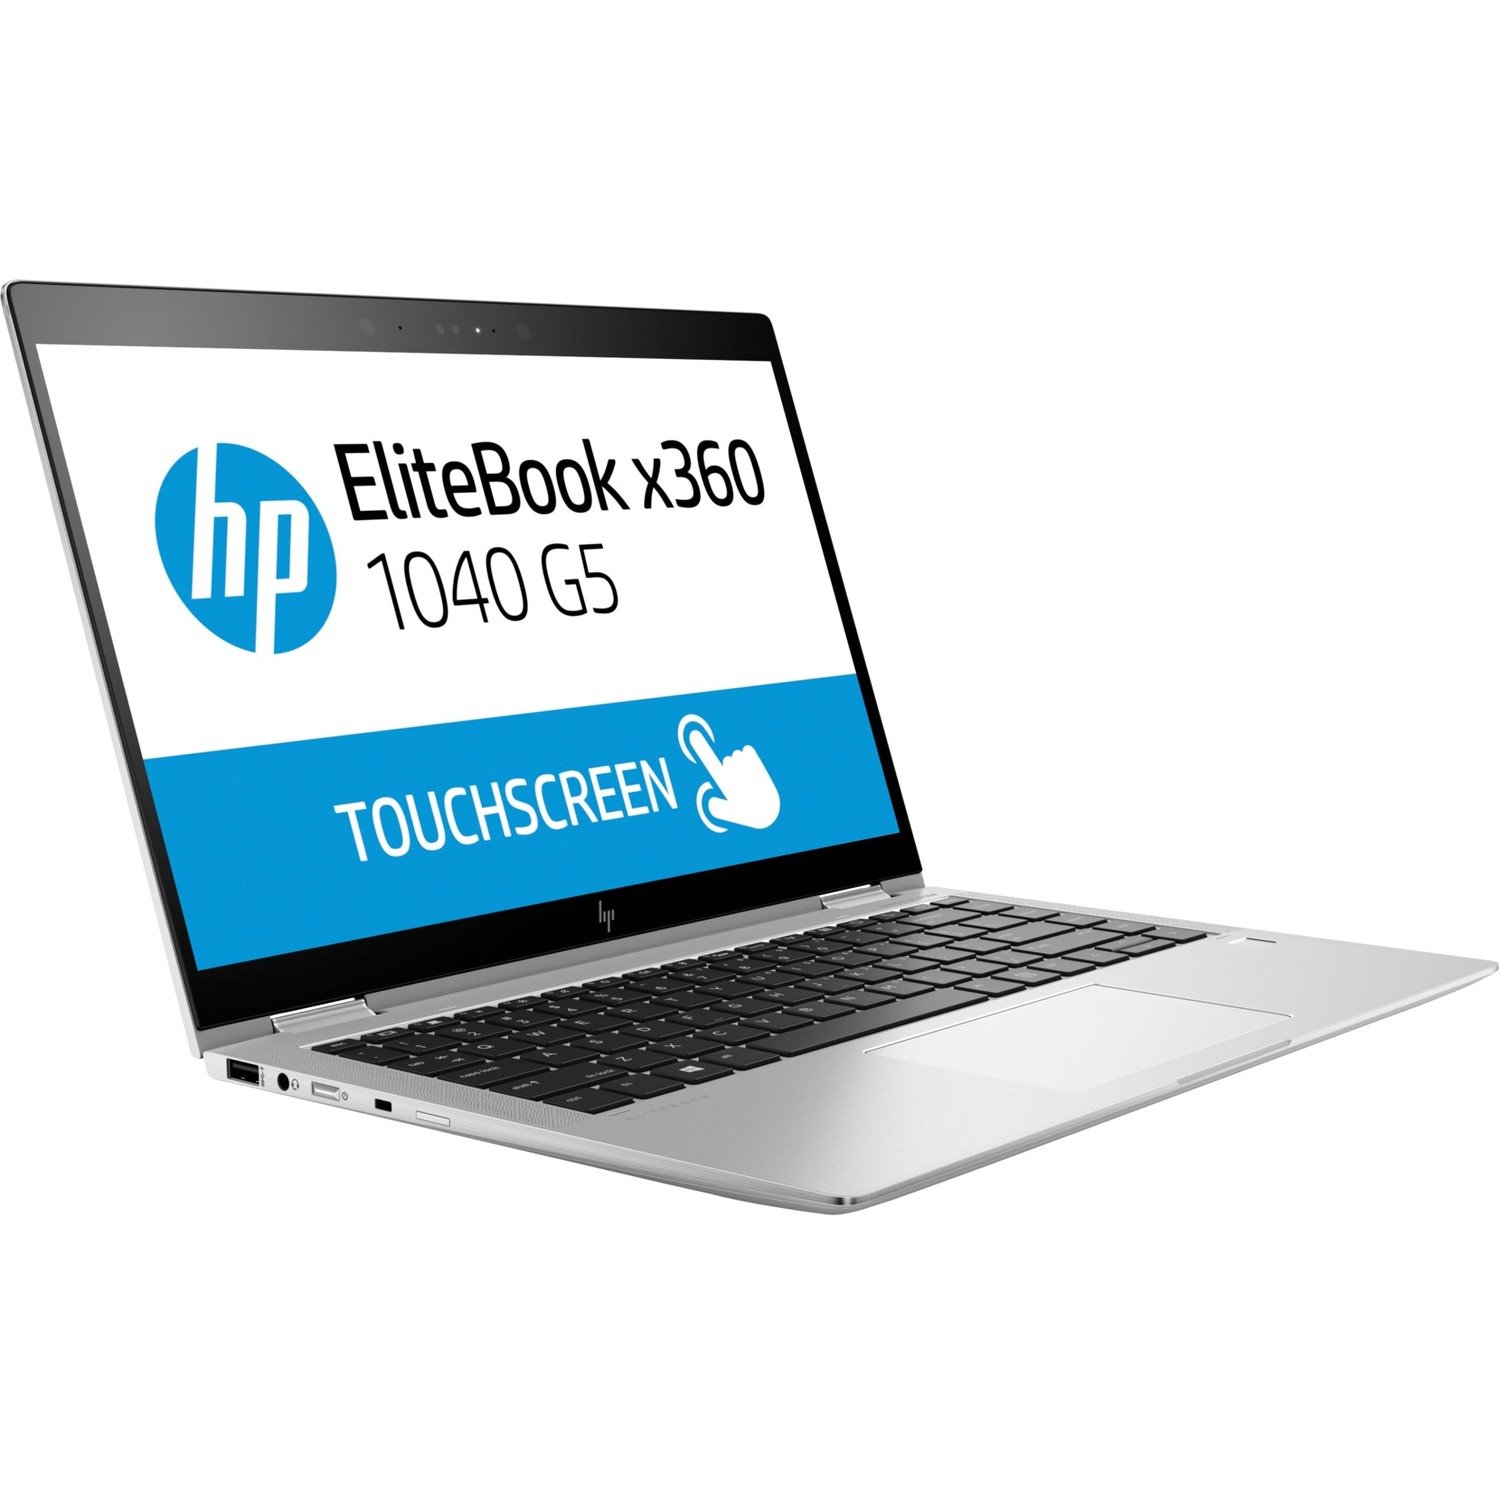 HP EliteBook x360 1040 G5 14" Touchscreen Convertible 2 in 1 Notebook - 1920 x 1080 - Intel Core i7 8th Gen i7-8650U Quad-core (4 Core) 1.90 GHz - 16 GB Total RAM - 512 GB SSD